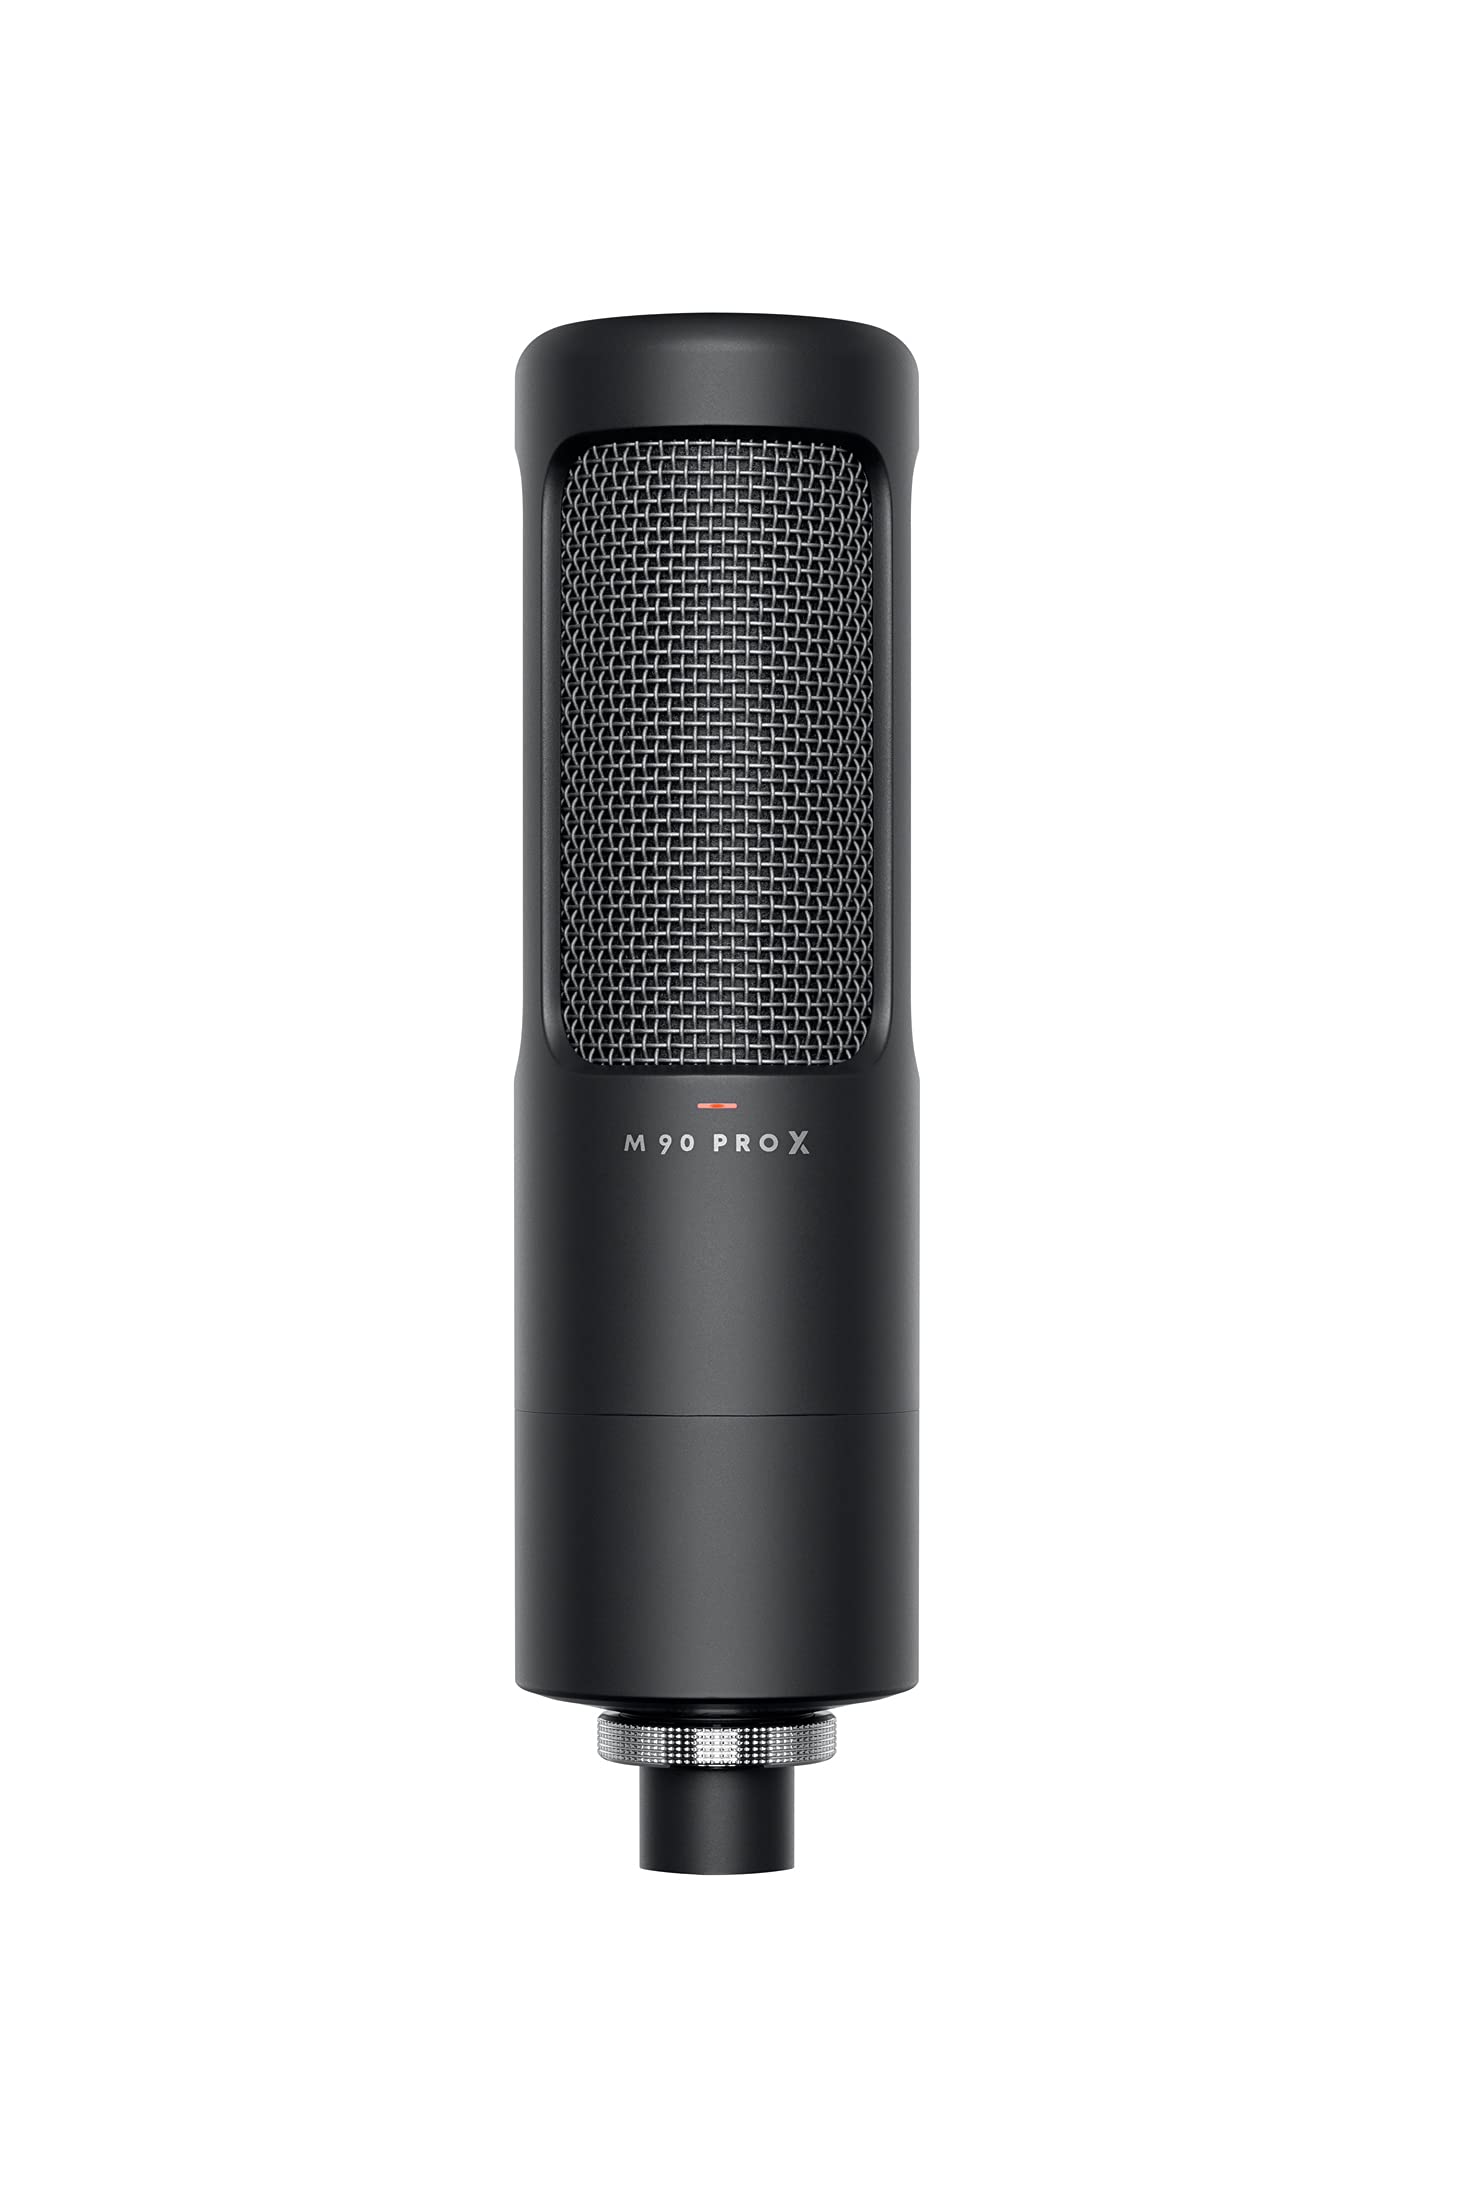 Beyerdynamic M 90 PRO X Echtkondensator-Mikrofon für Home-, Project-, und Studio-Recording mit XLR-Anschluss inkl. Pop-Filter und Mikrofonspinne